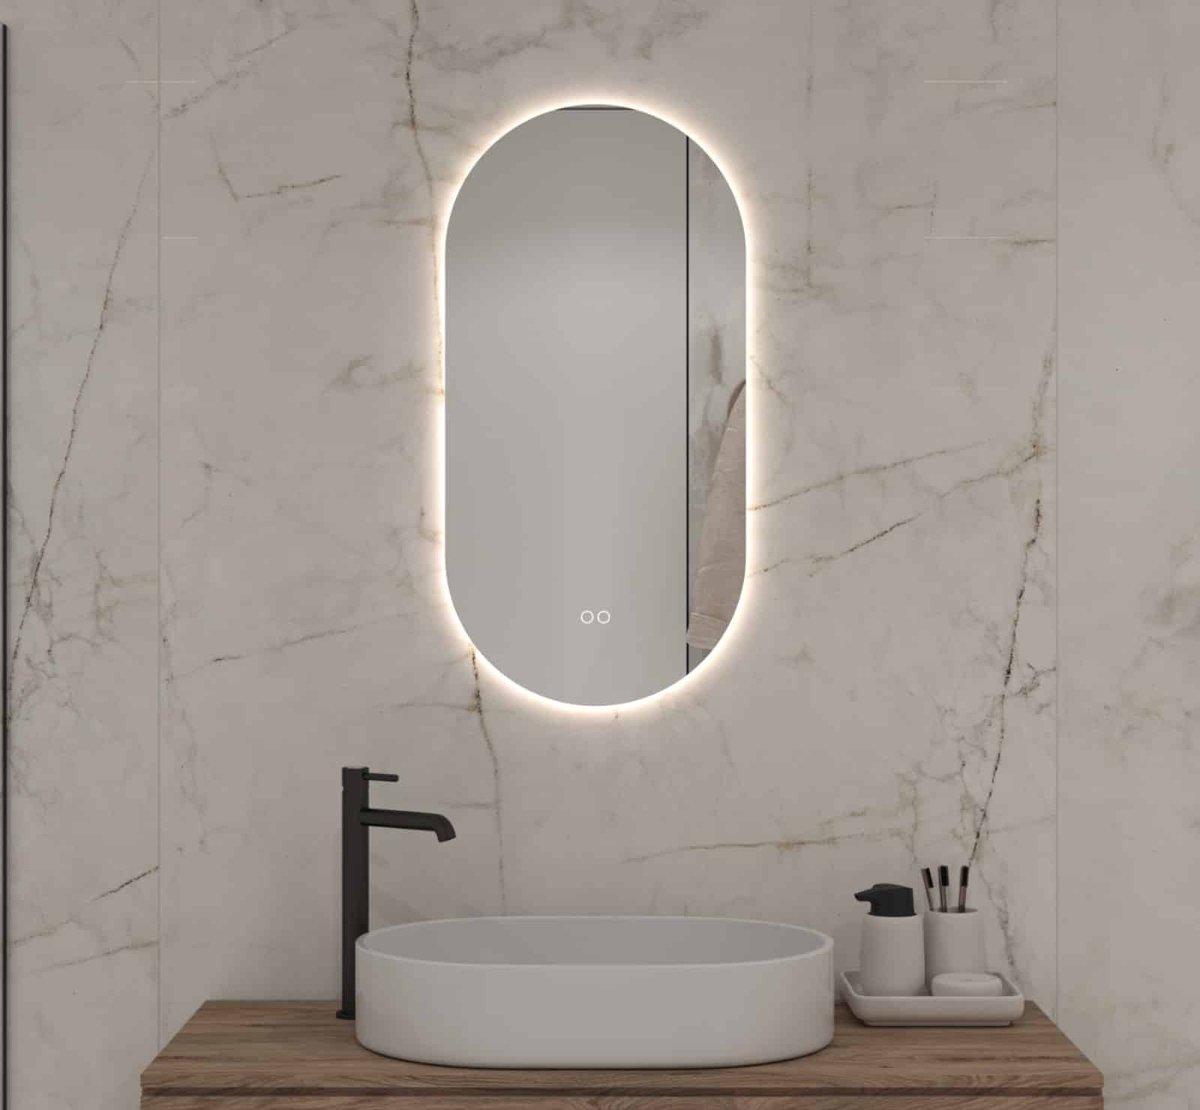 Ovale badkamerspiegel met indirecte verlichting, verwarming, instelbare lichtkleur en dimfunctie 40x80 cm